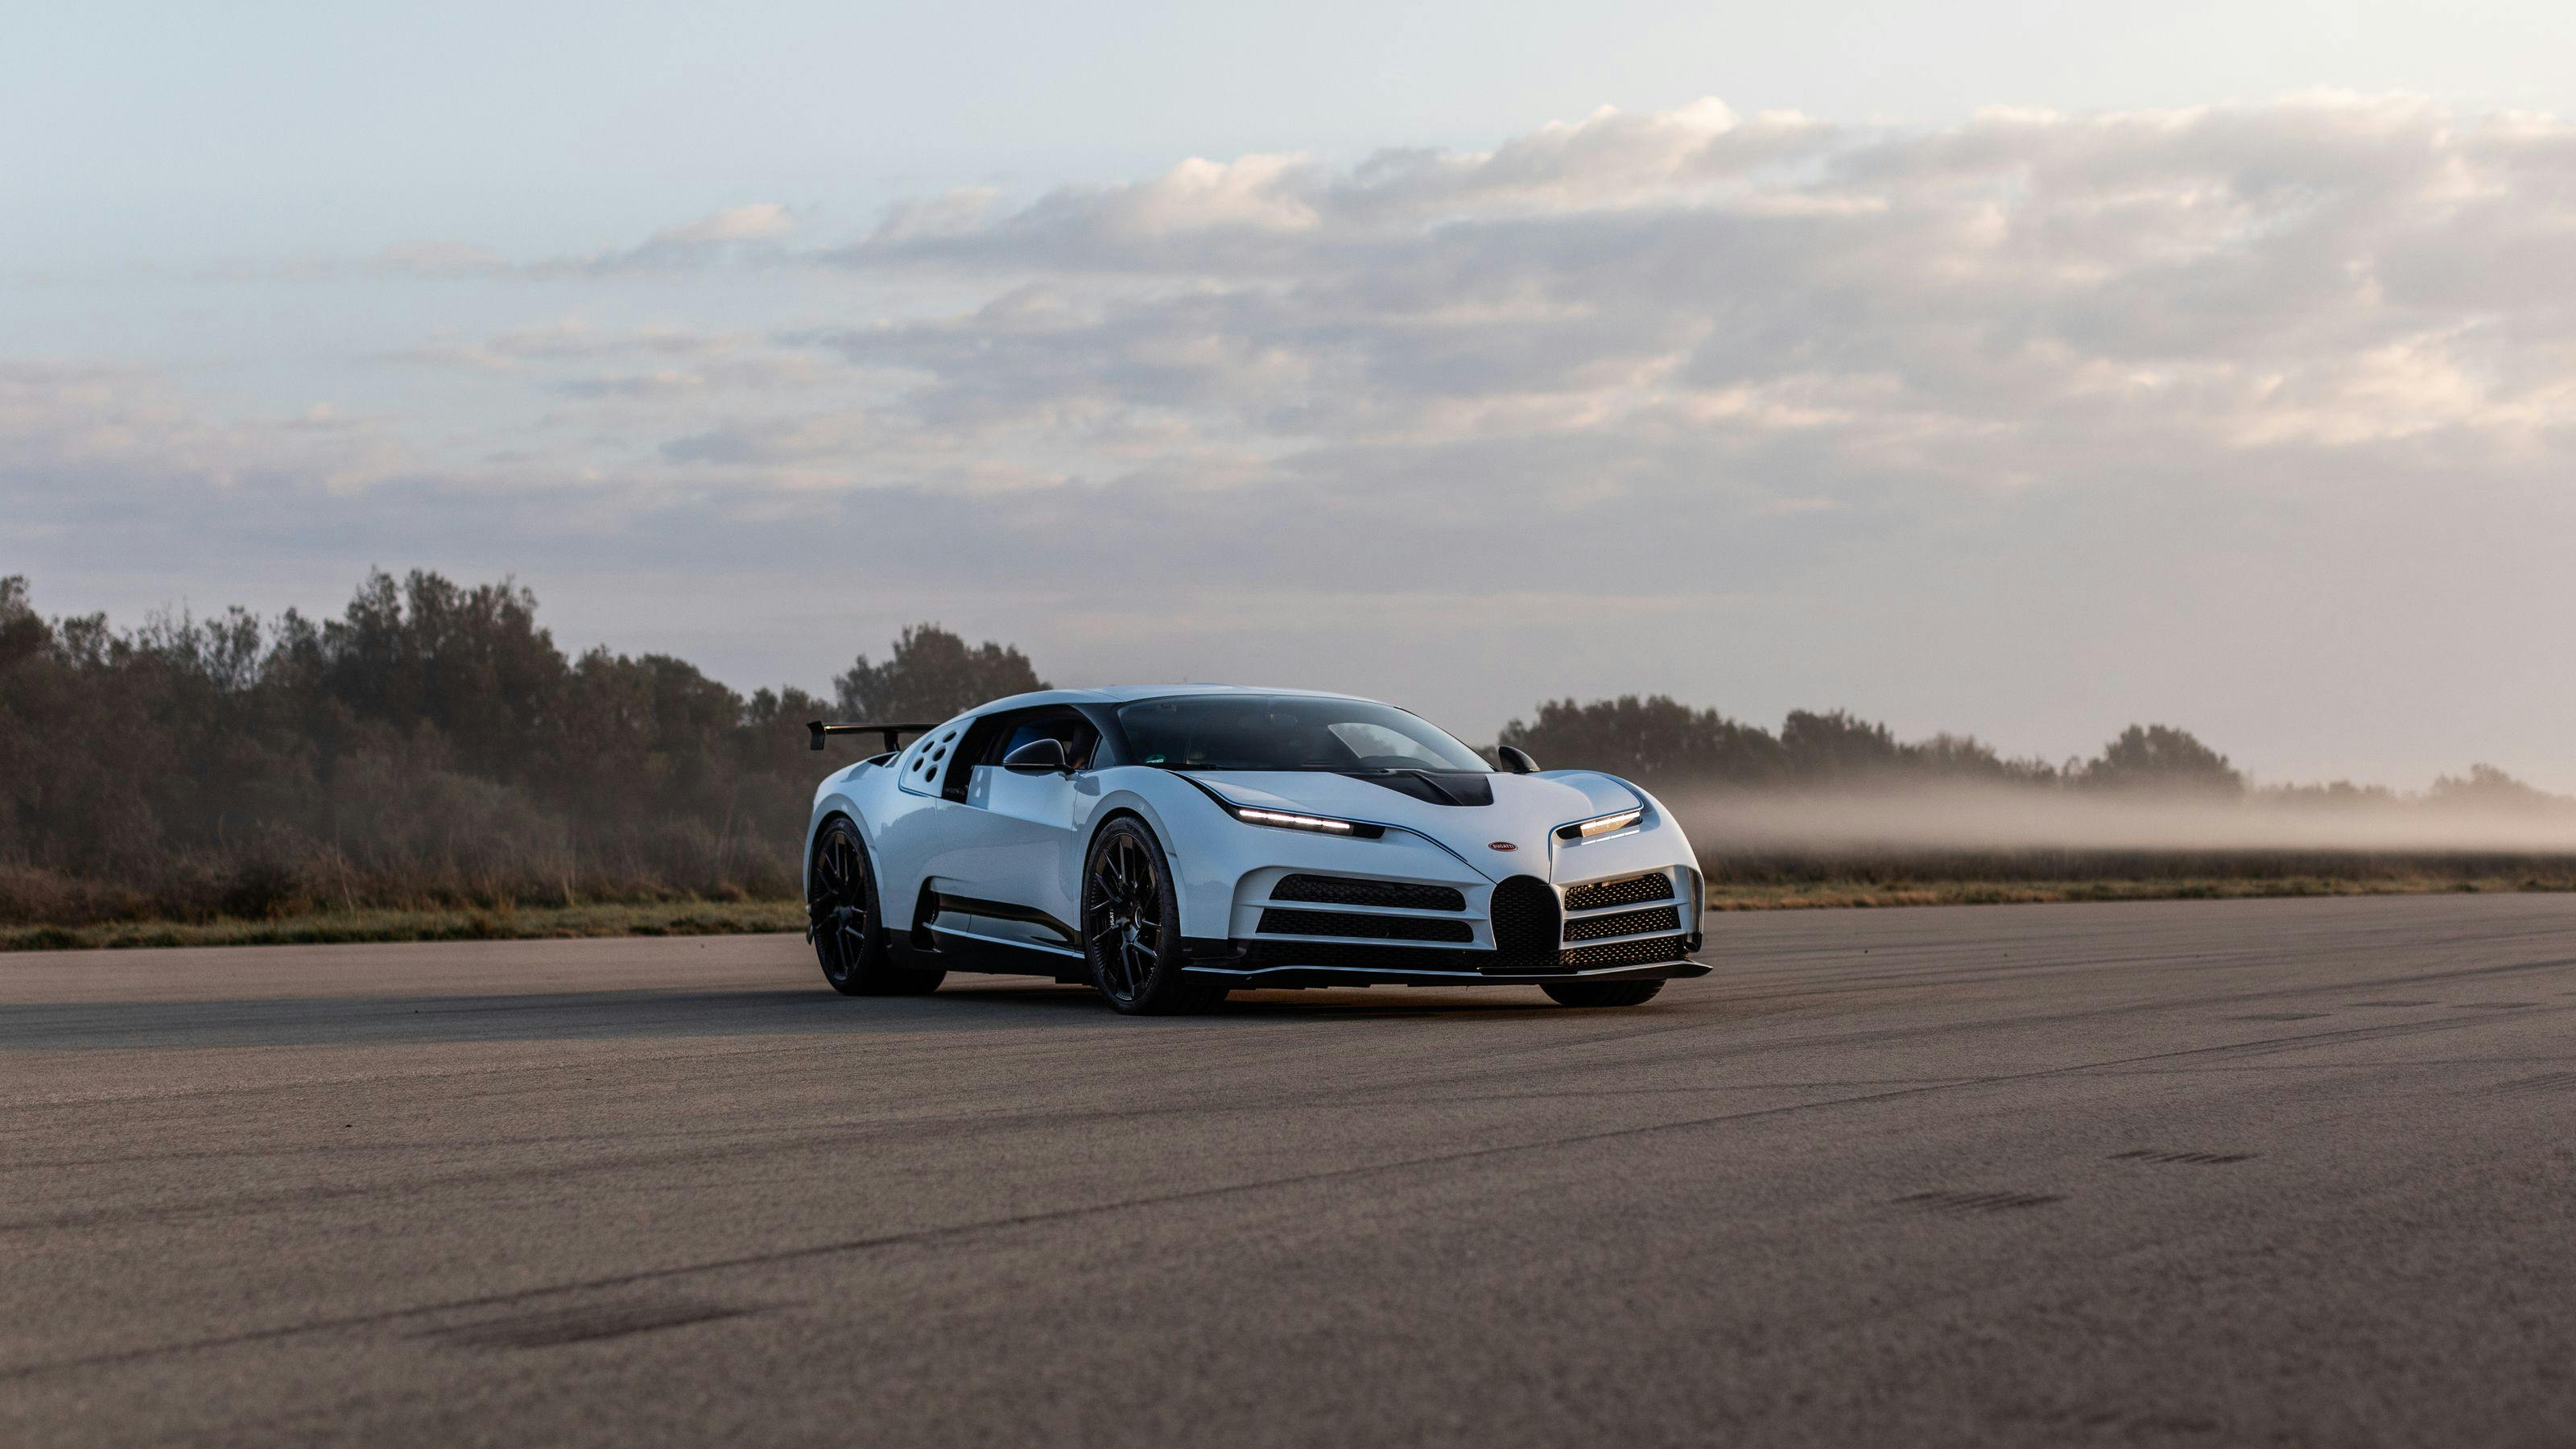 La Bugatti Centodieci s’apprête à entrer en phase de production – plus de 50 000 km de test avalés